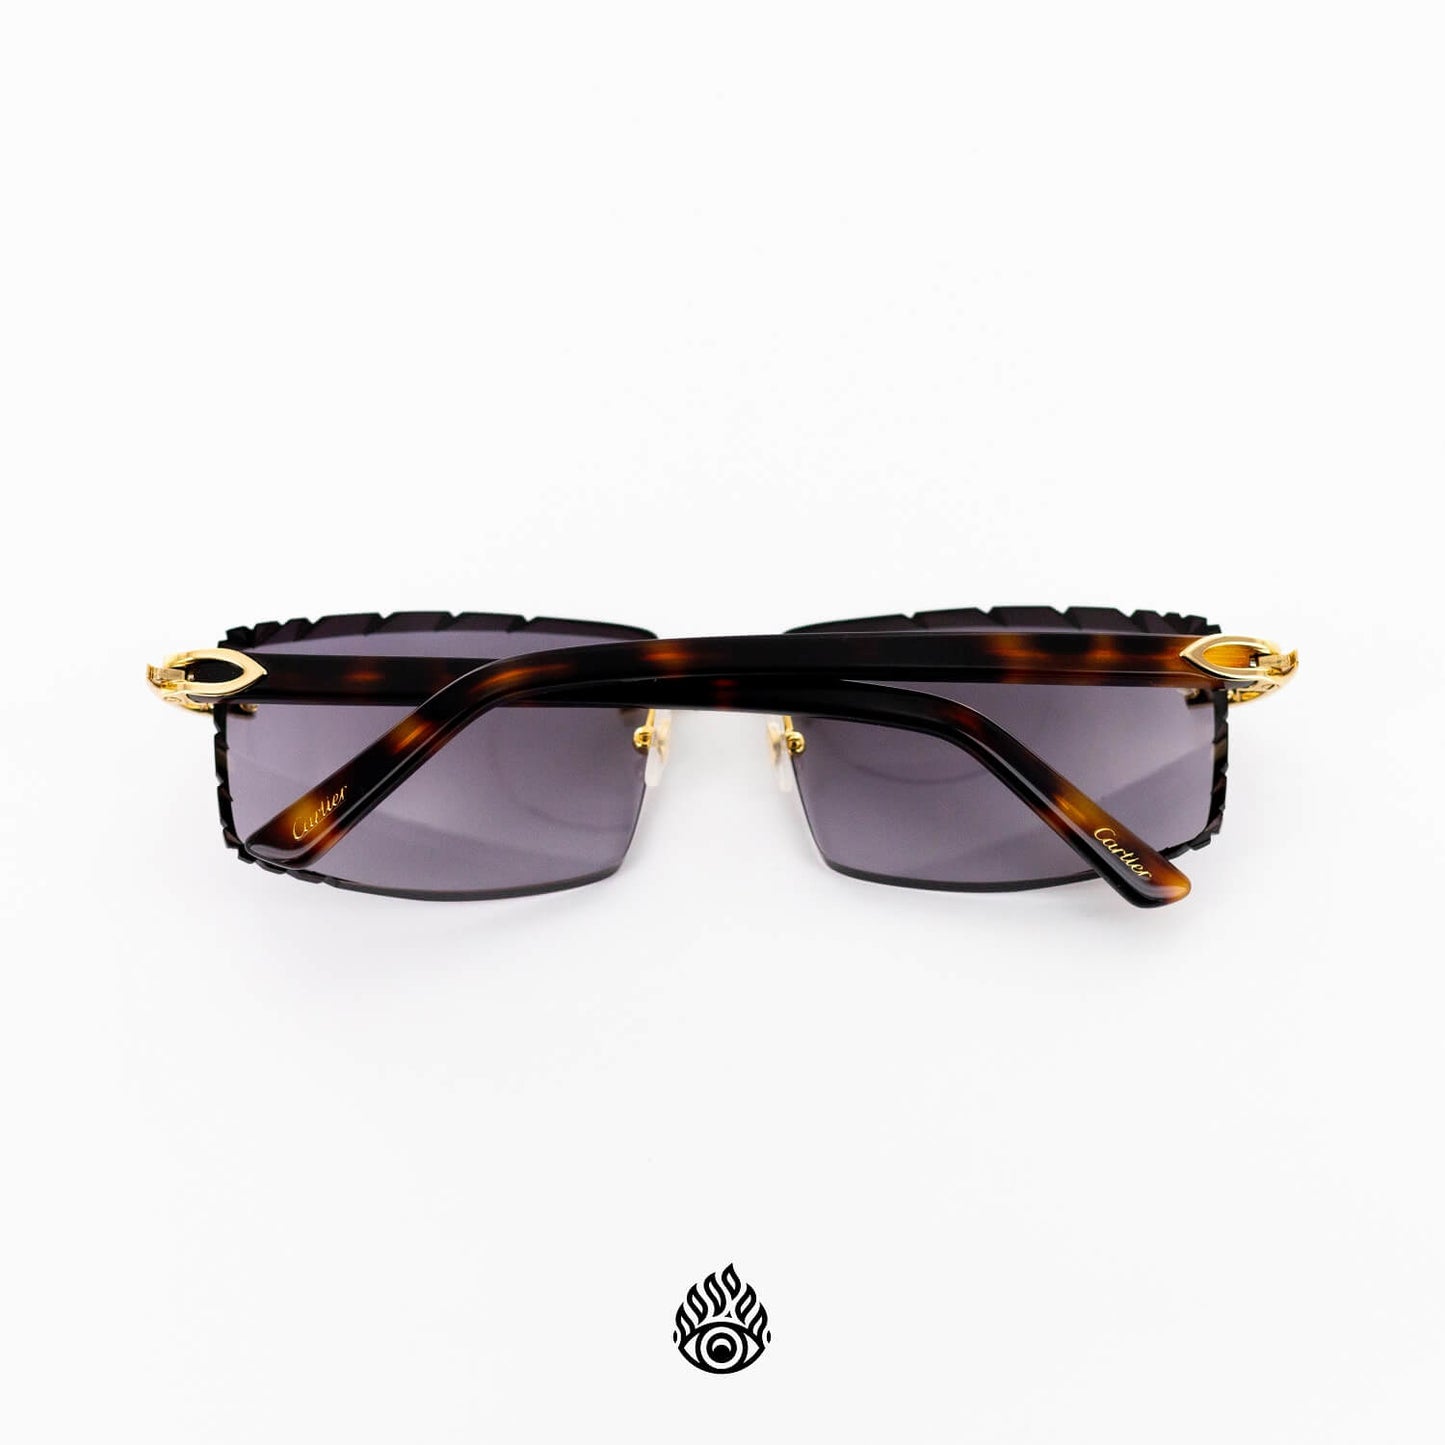 Cartier Tortoise Acetate Glasses with Gold C Decor & Purple Lens